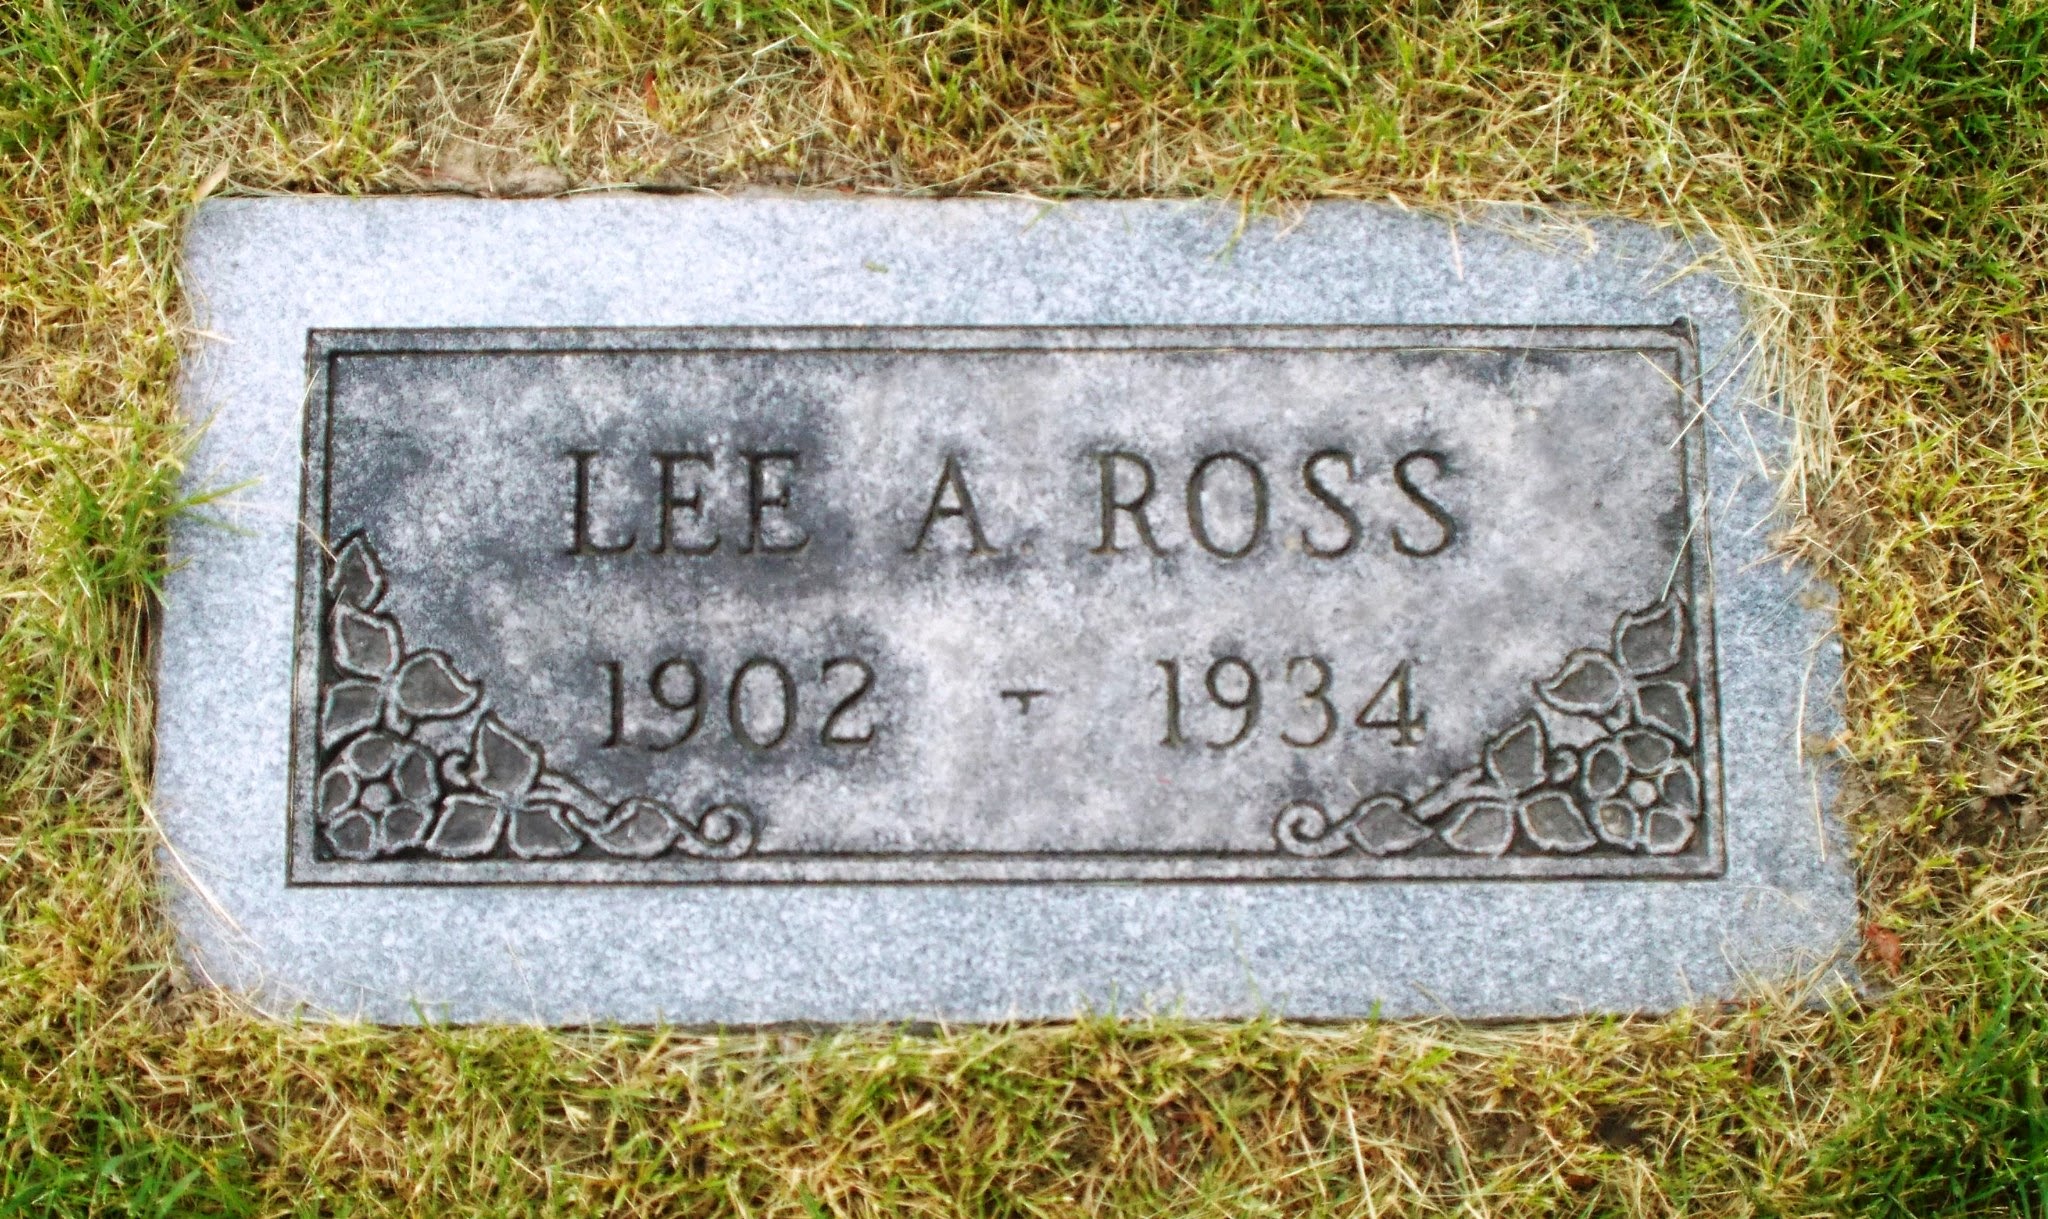 Lee A Ross